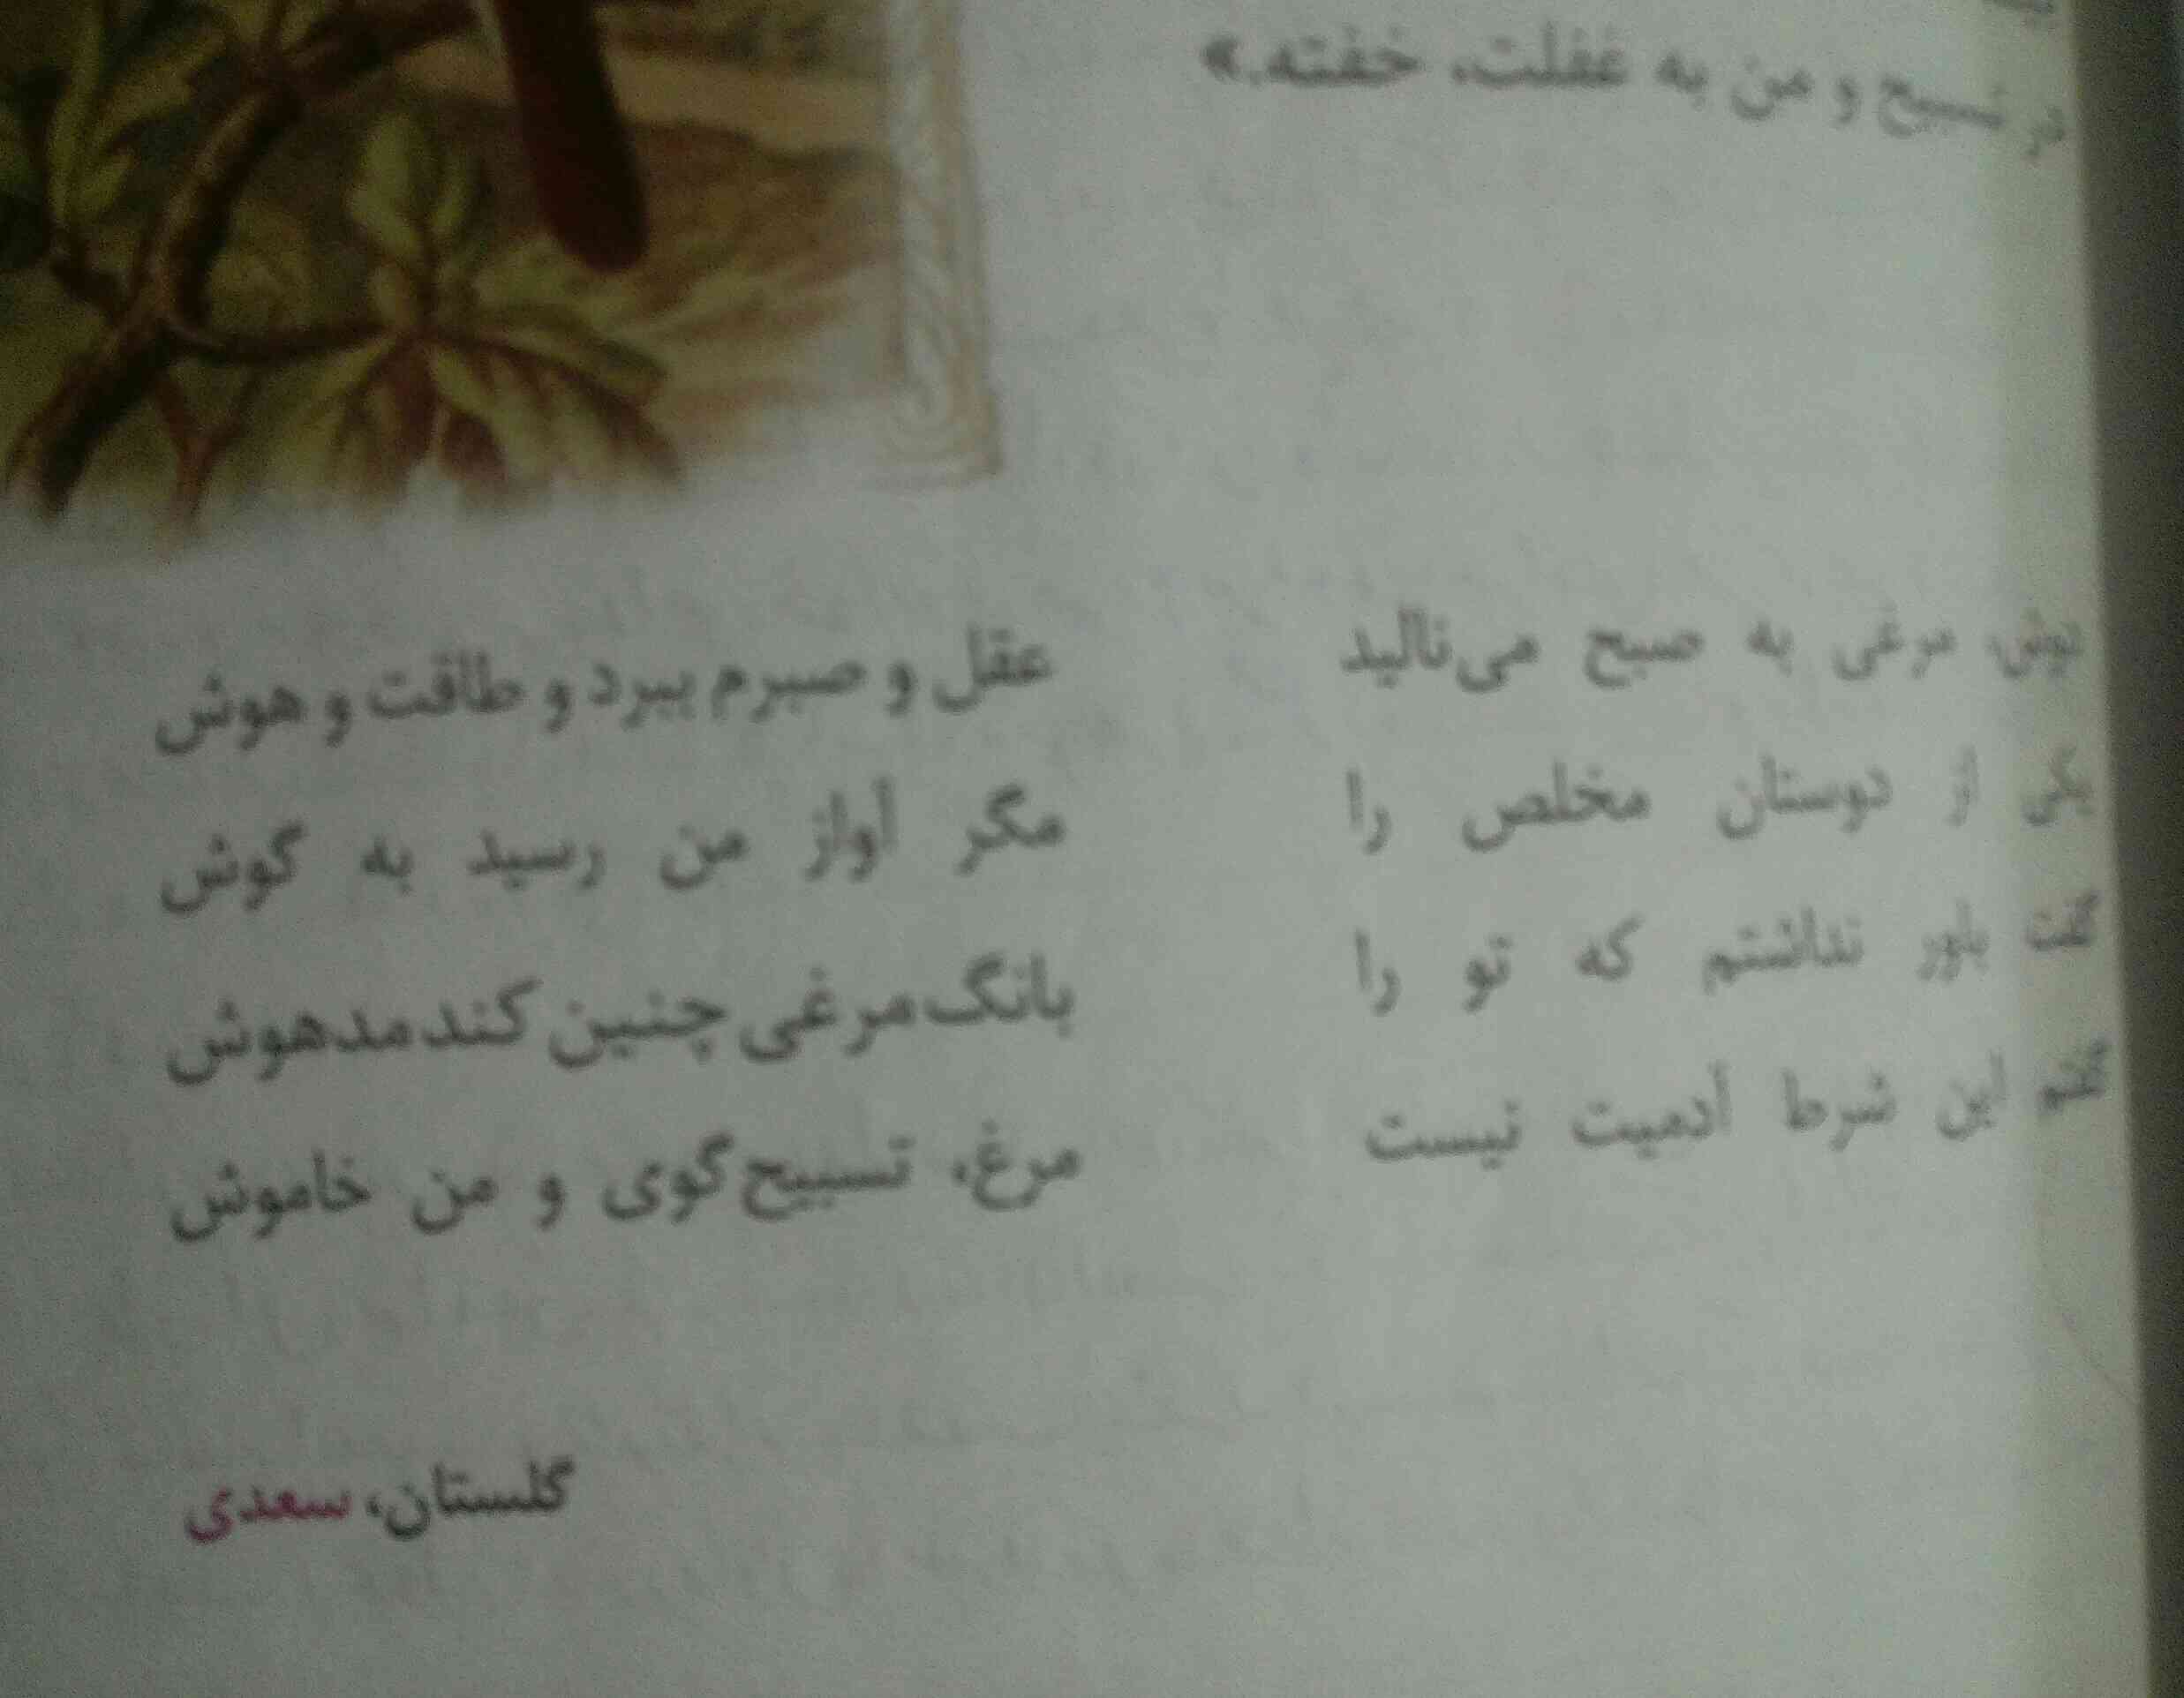 سلام میشه معنی شعر صفحه سی و پنج و بگید مرسی